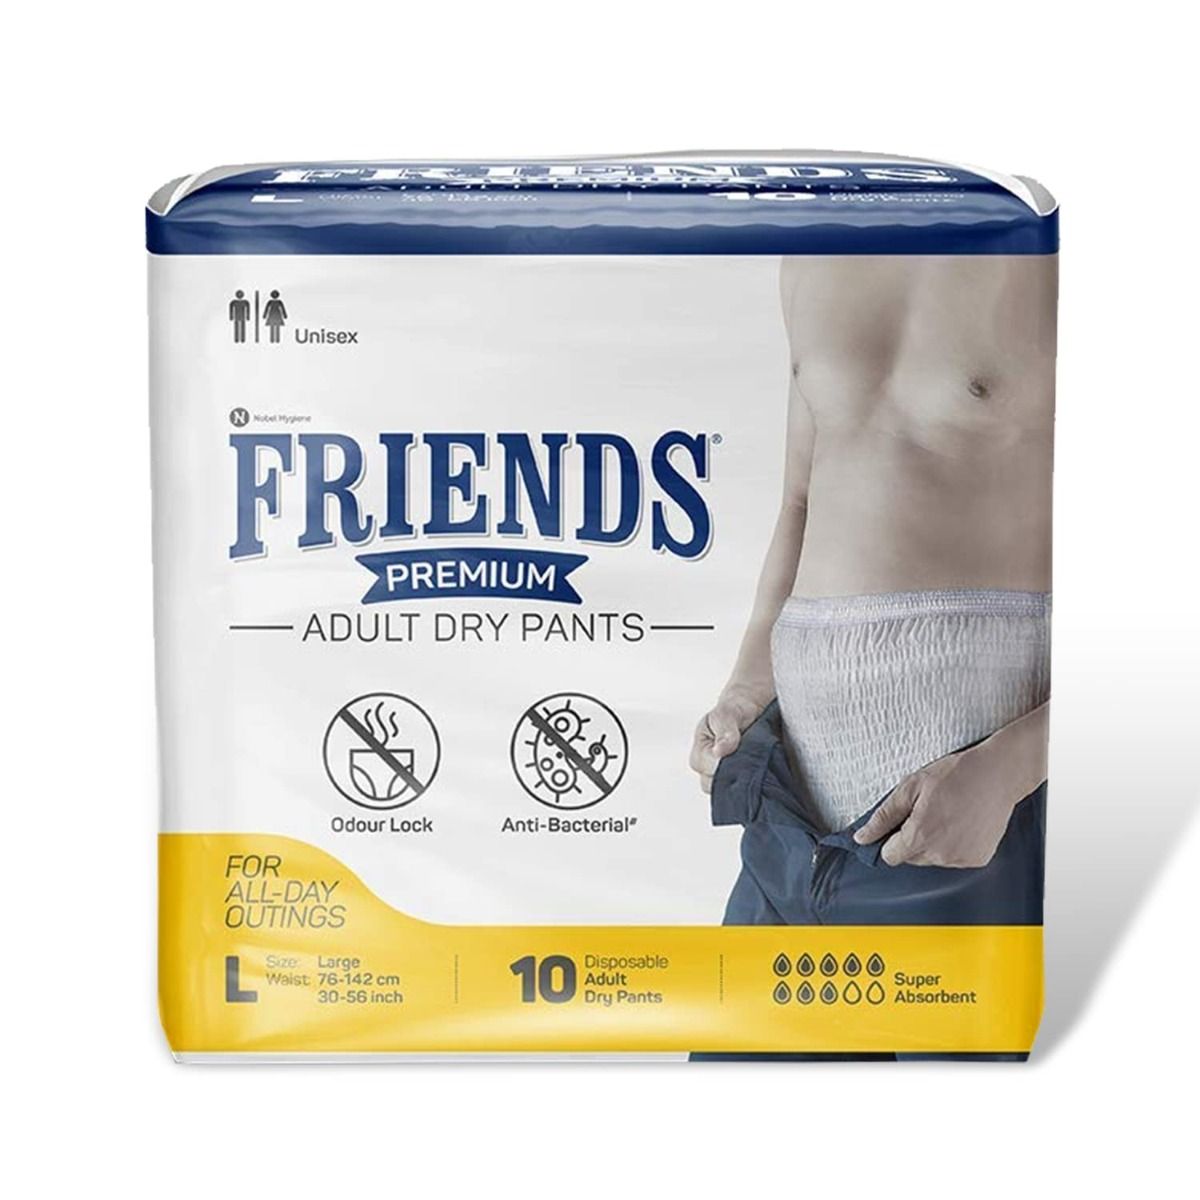 Buy Friends Premium Adult Dry Pants Large, 10 Count Online